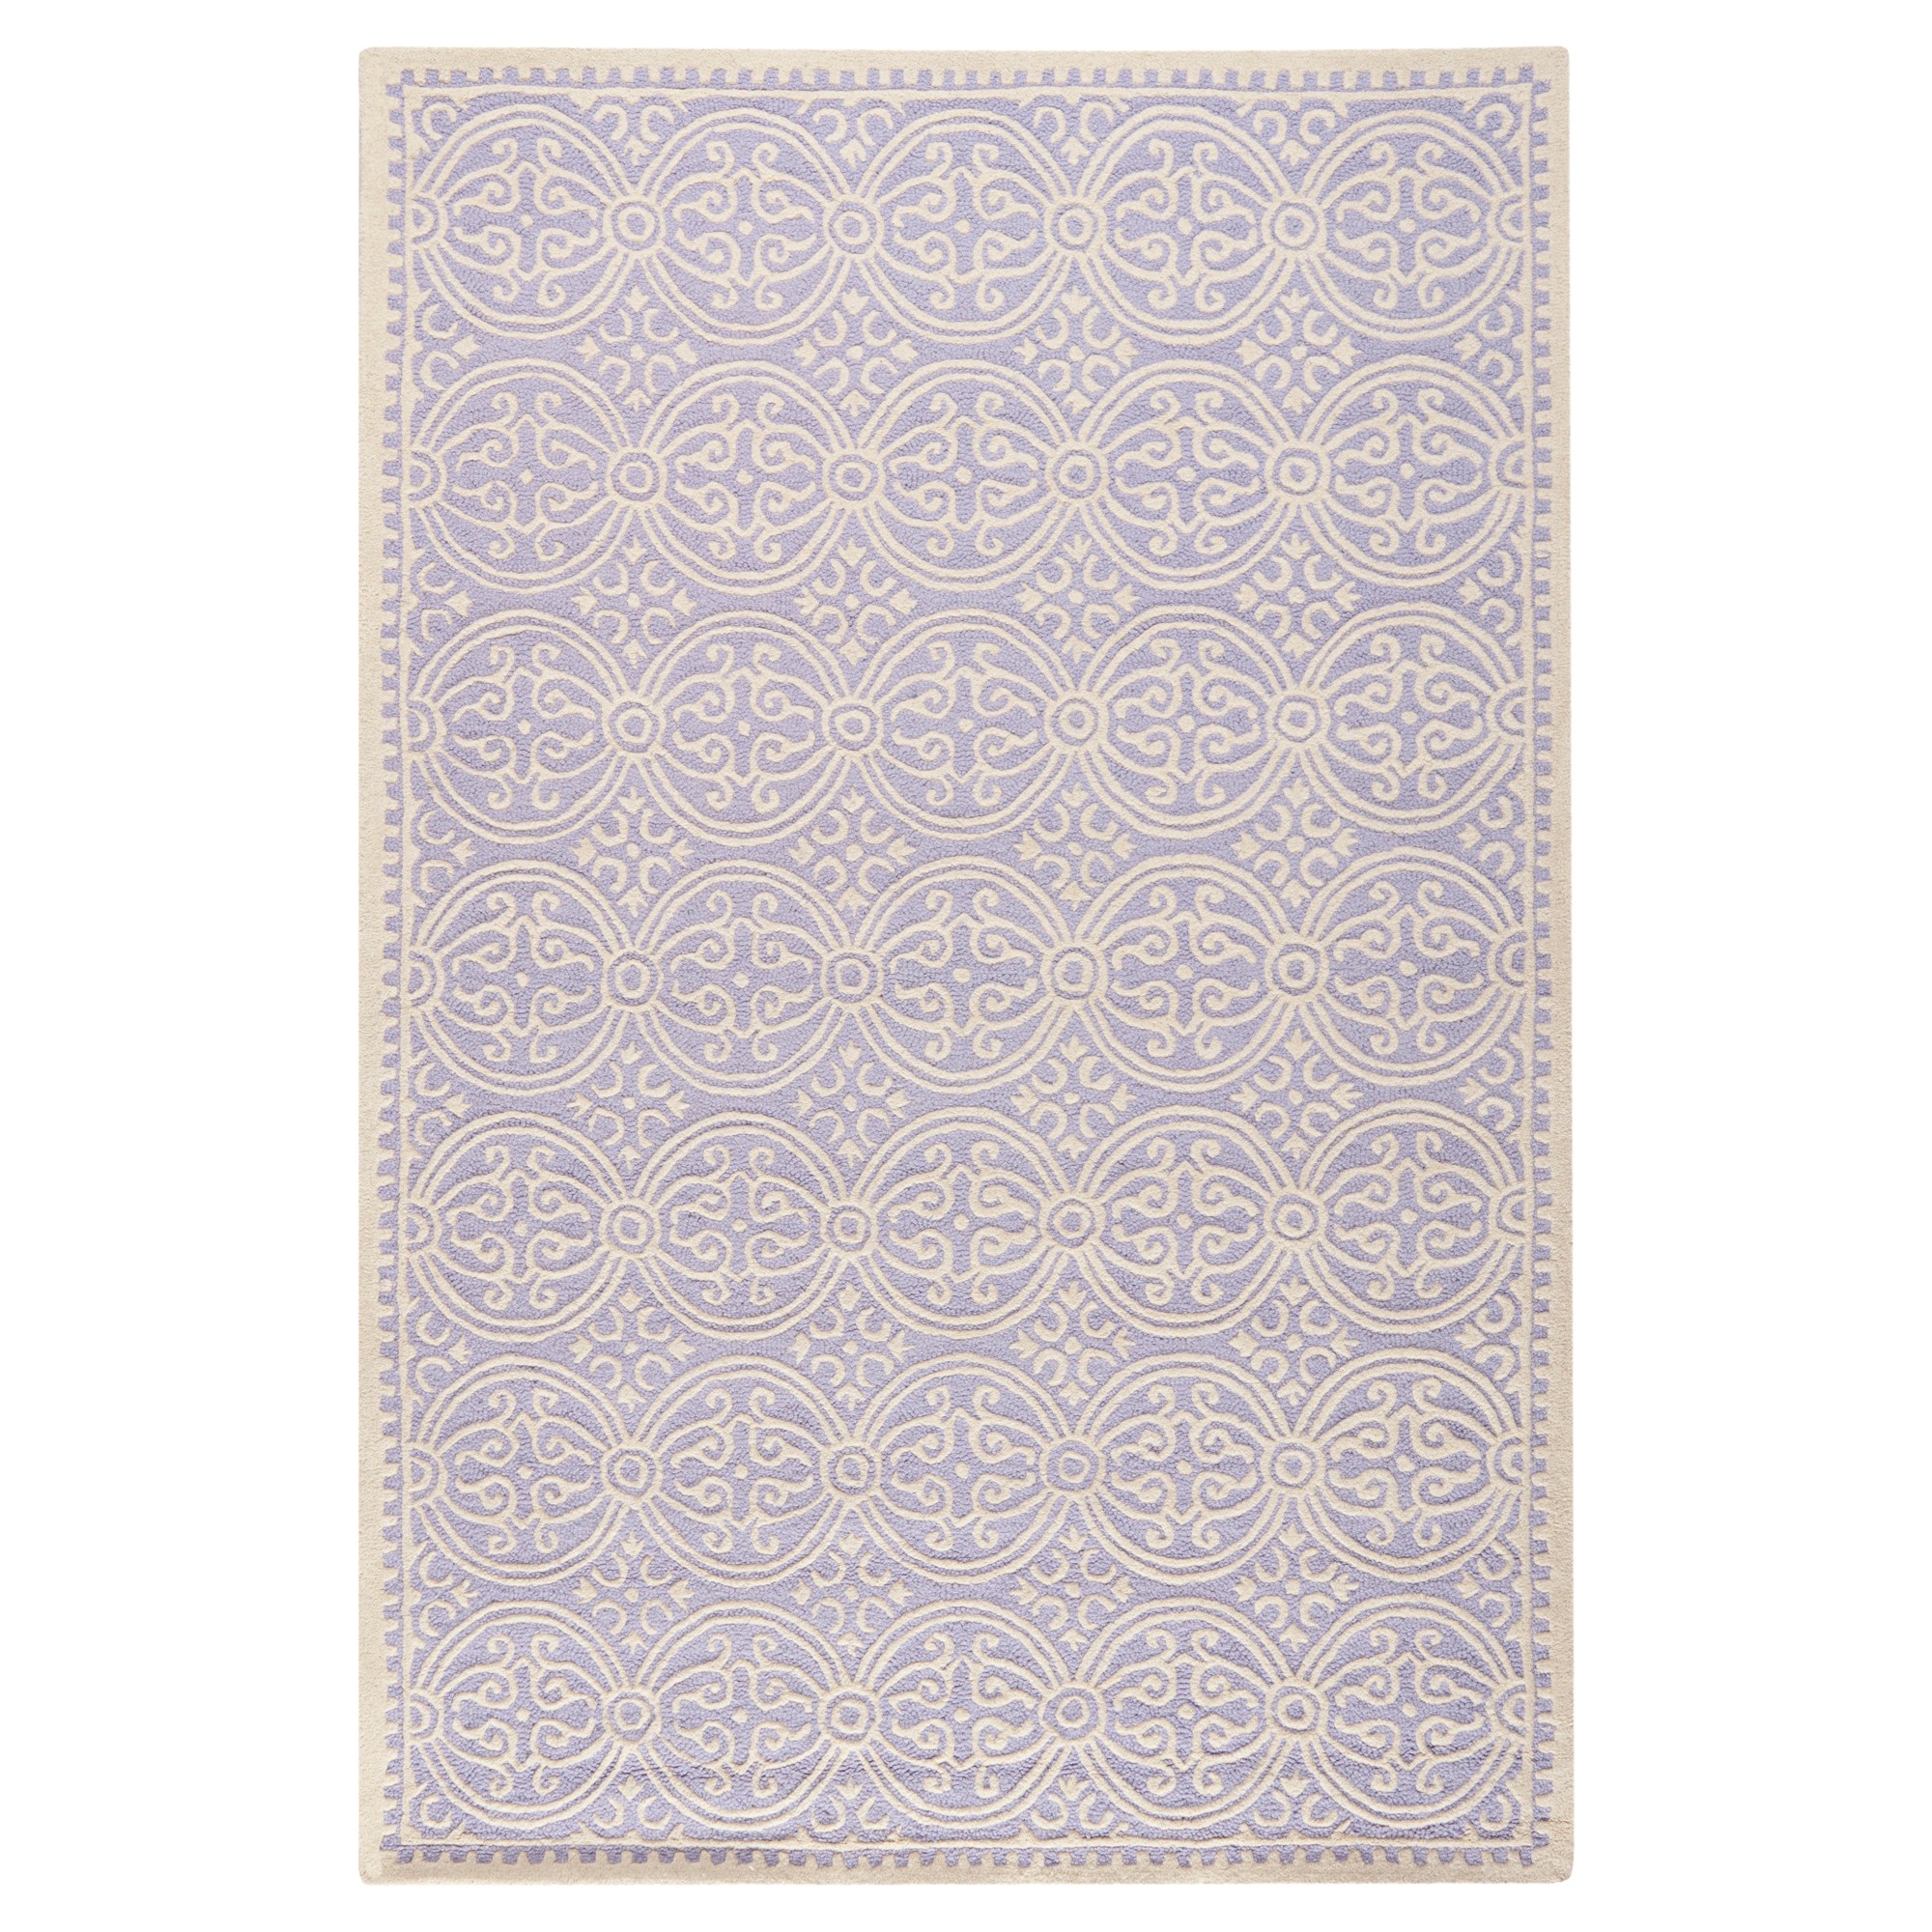 Lavender/Ivory Geometric Tufted Area Rug 6'X9' - Safavieh, Purple/Ivory